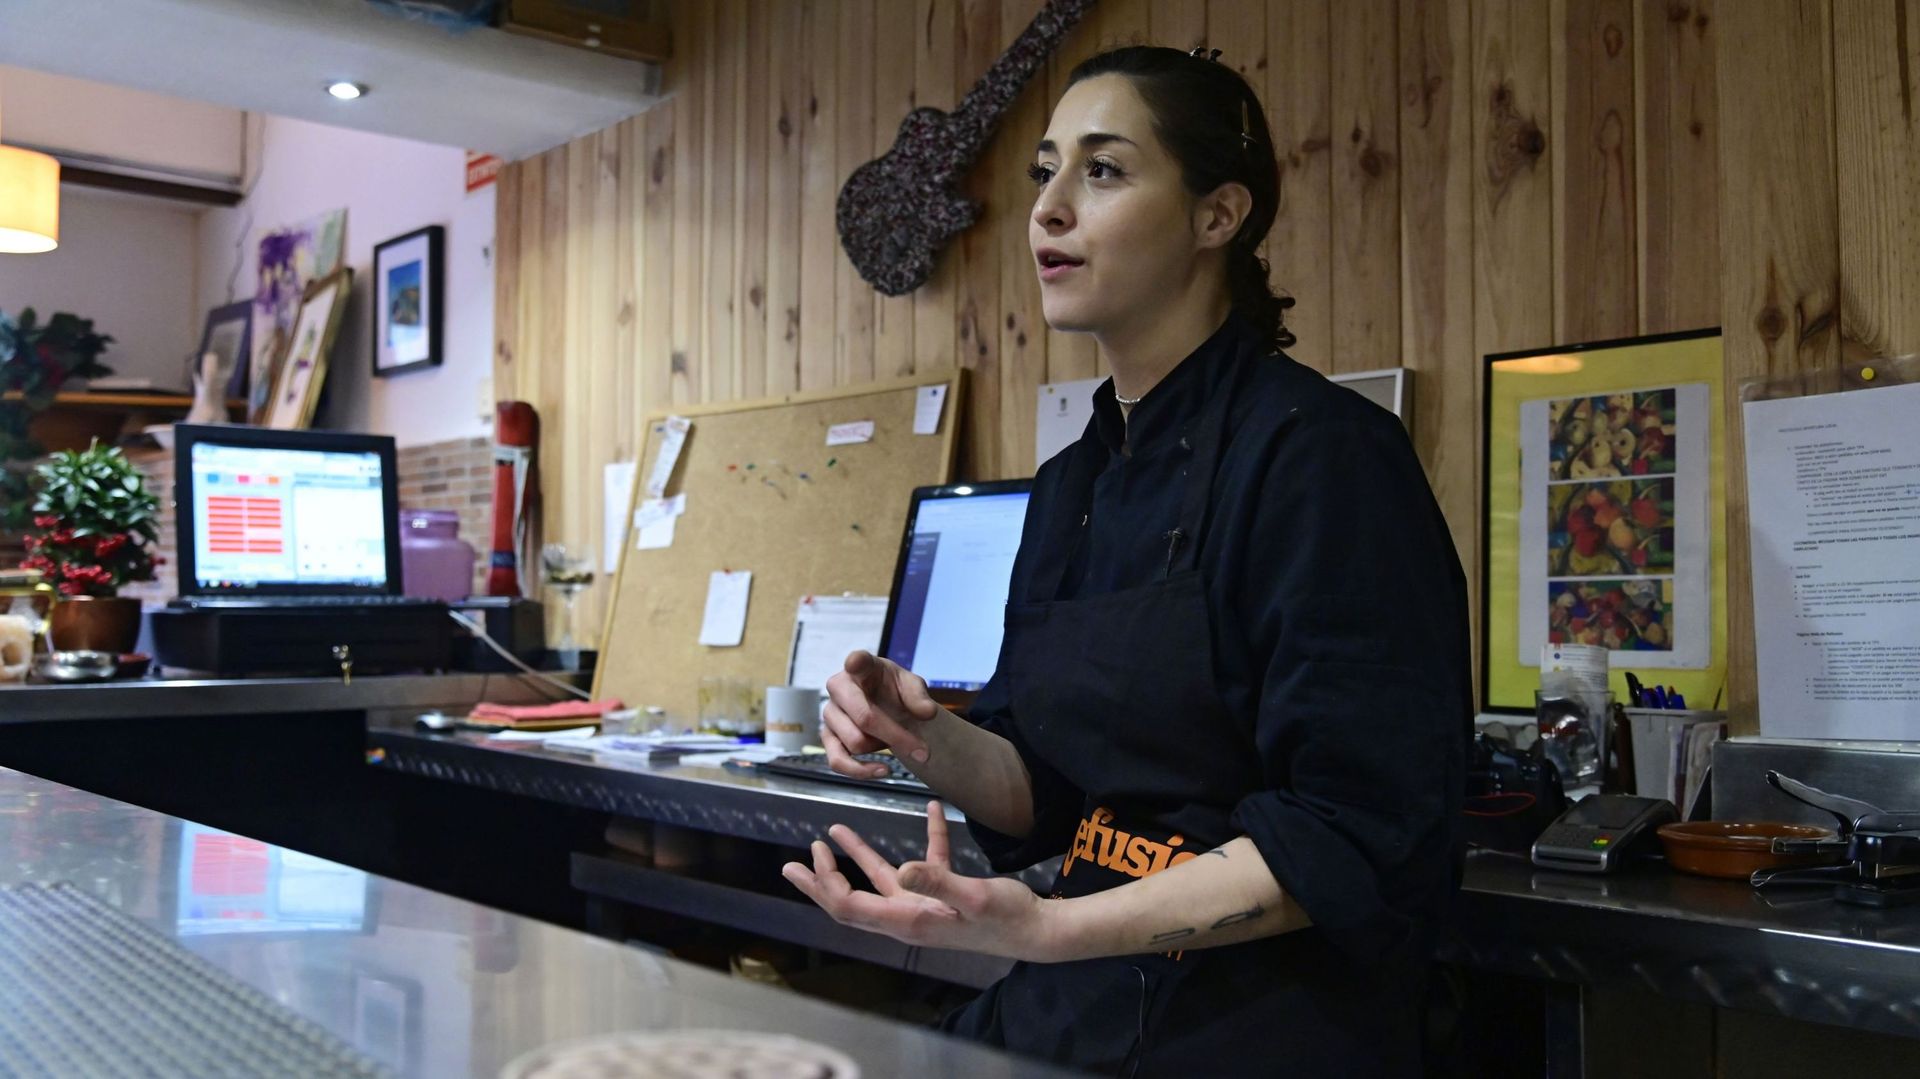 A Madrid, des réfugiés chefs d’un restaurant